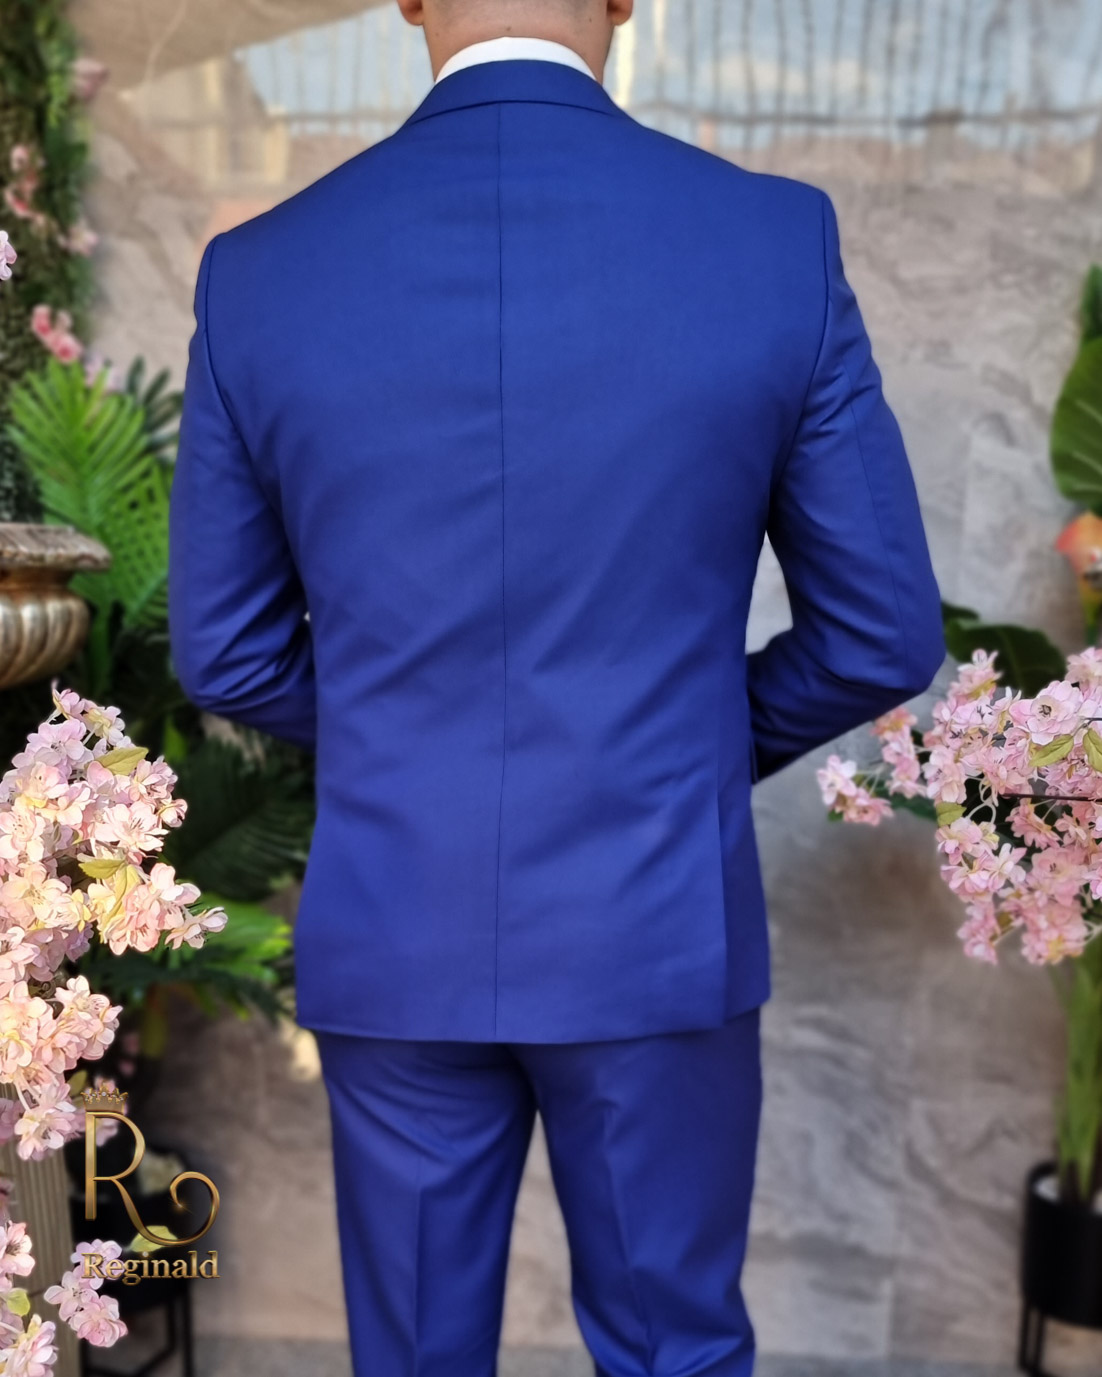 Costume homme bleu foncé - Veste, Gilet et Pantalon - C4216